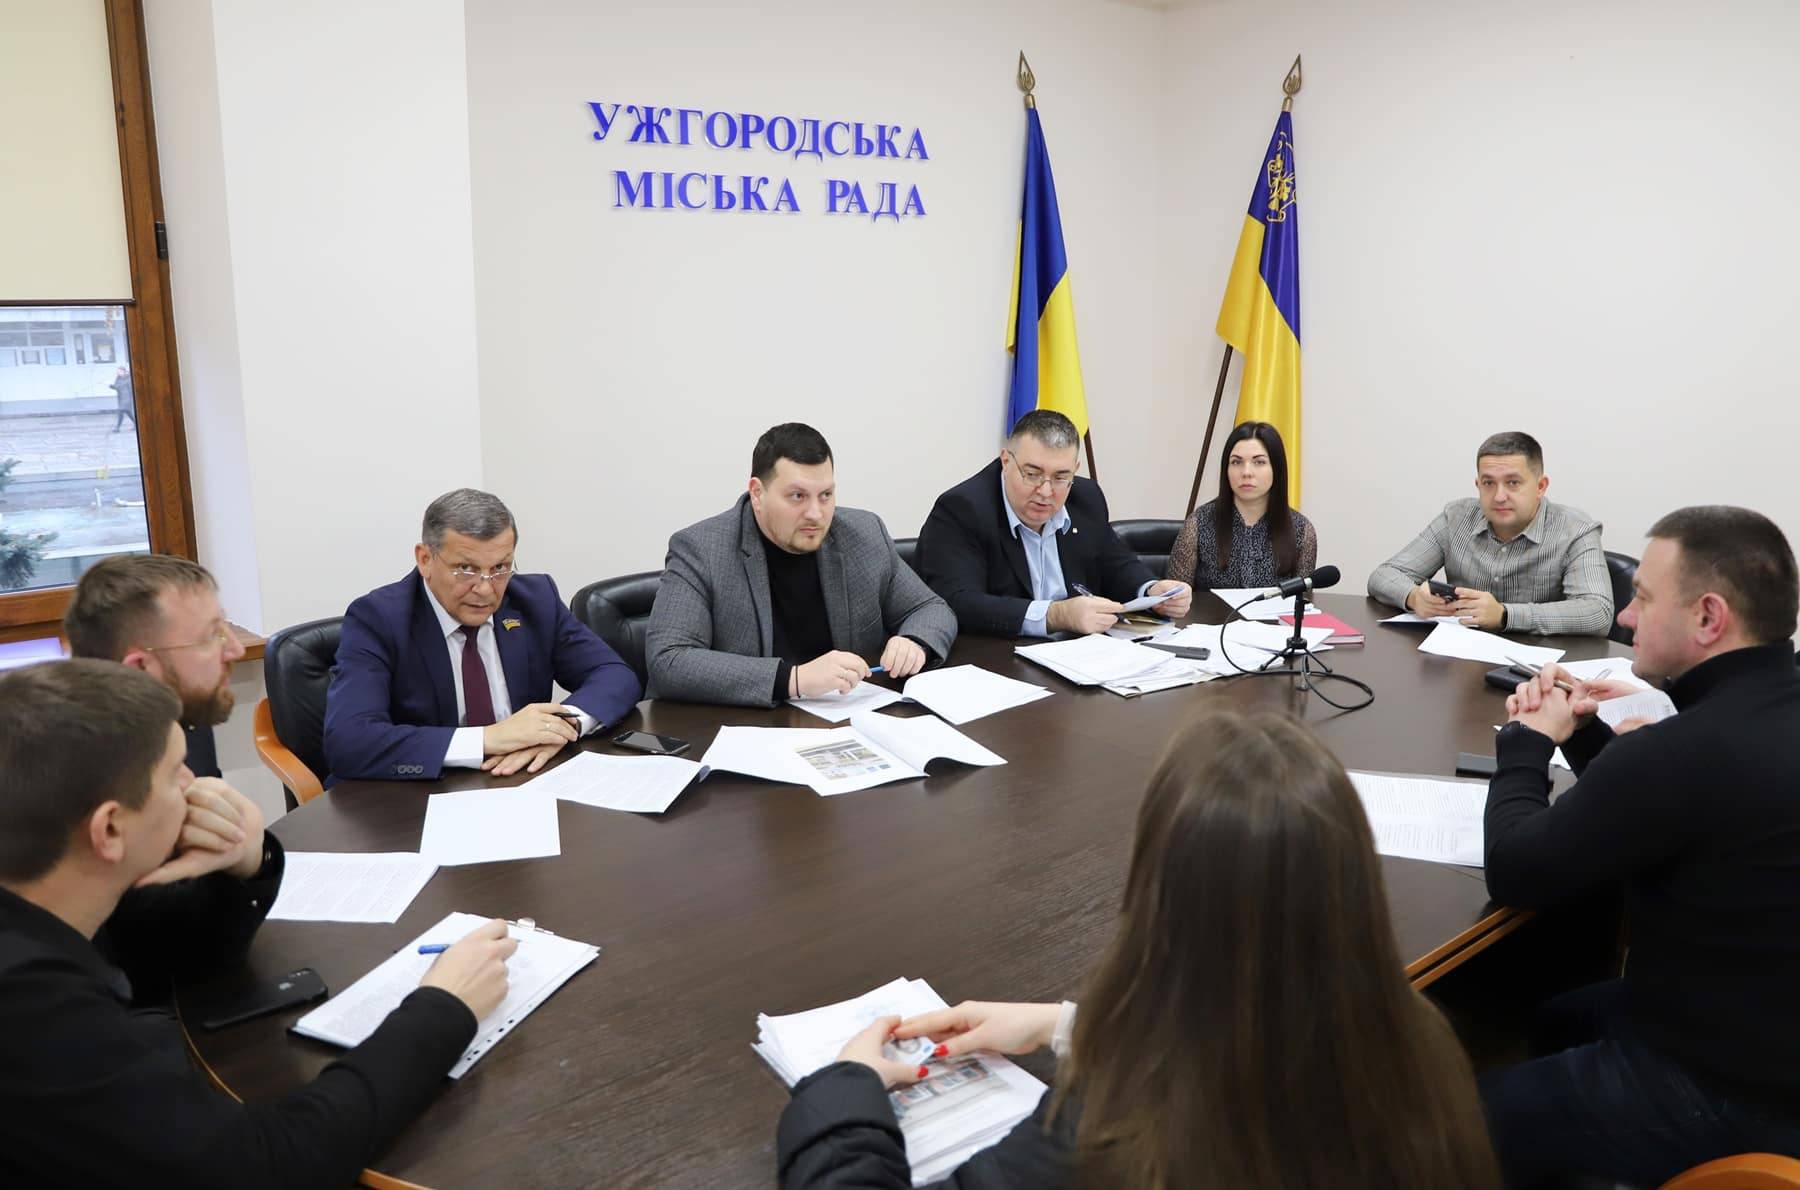 Чергове засідання адміністративної комісії відбулося в Ужгородській міськраді